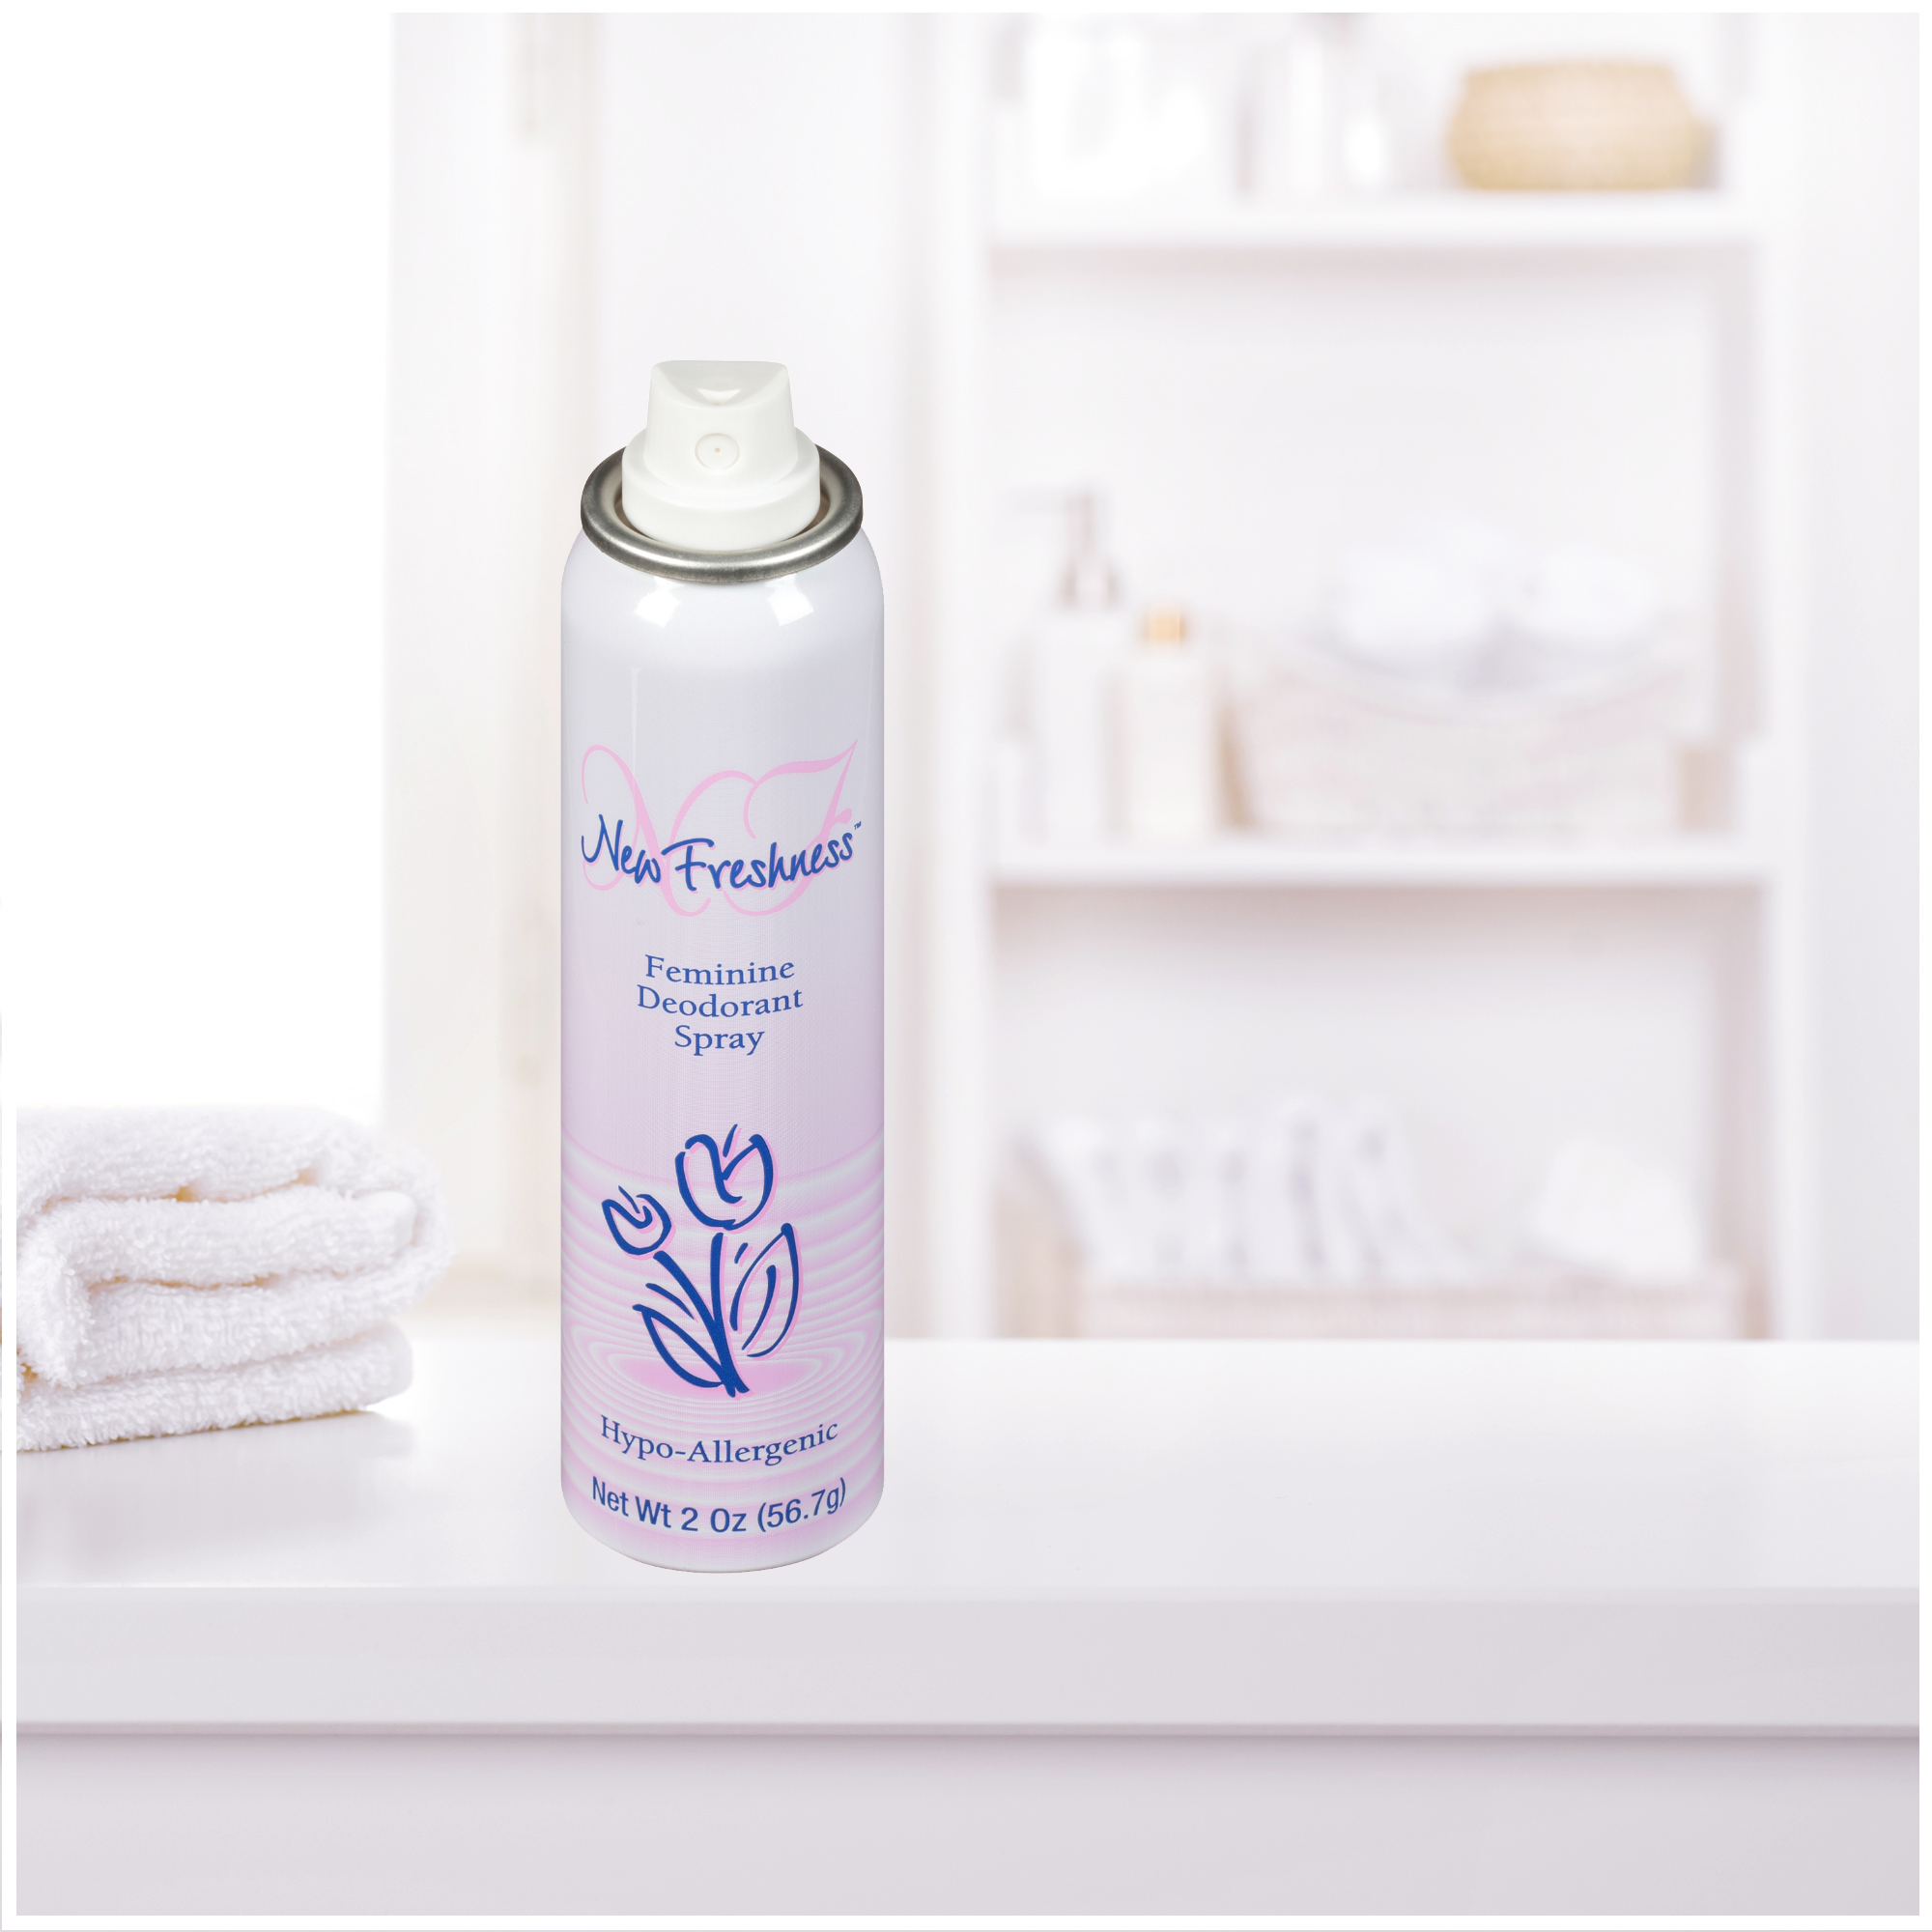 New Freshness Hypoallergenic Feminine Deodorant Spray, 2 Oz - image 2 of 12